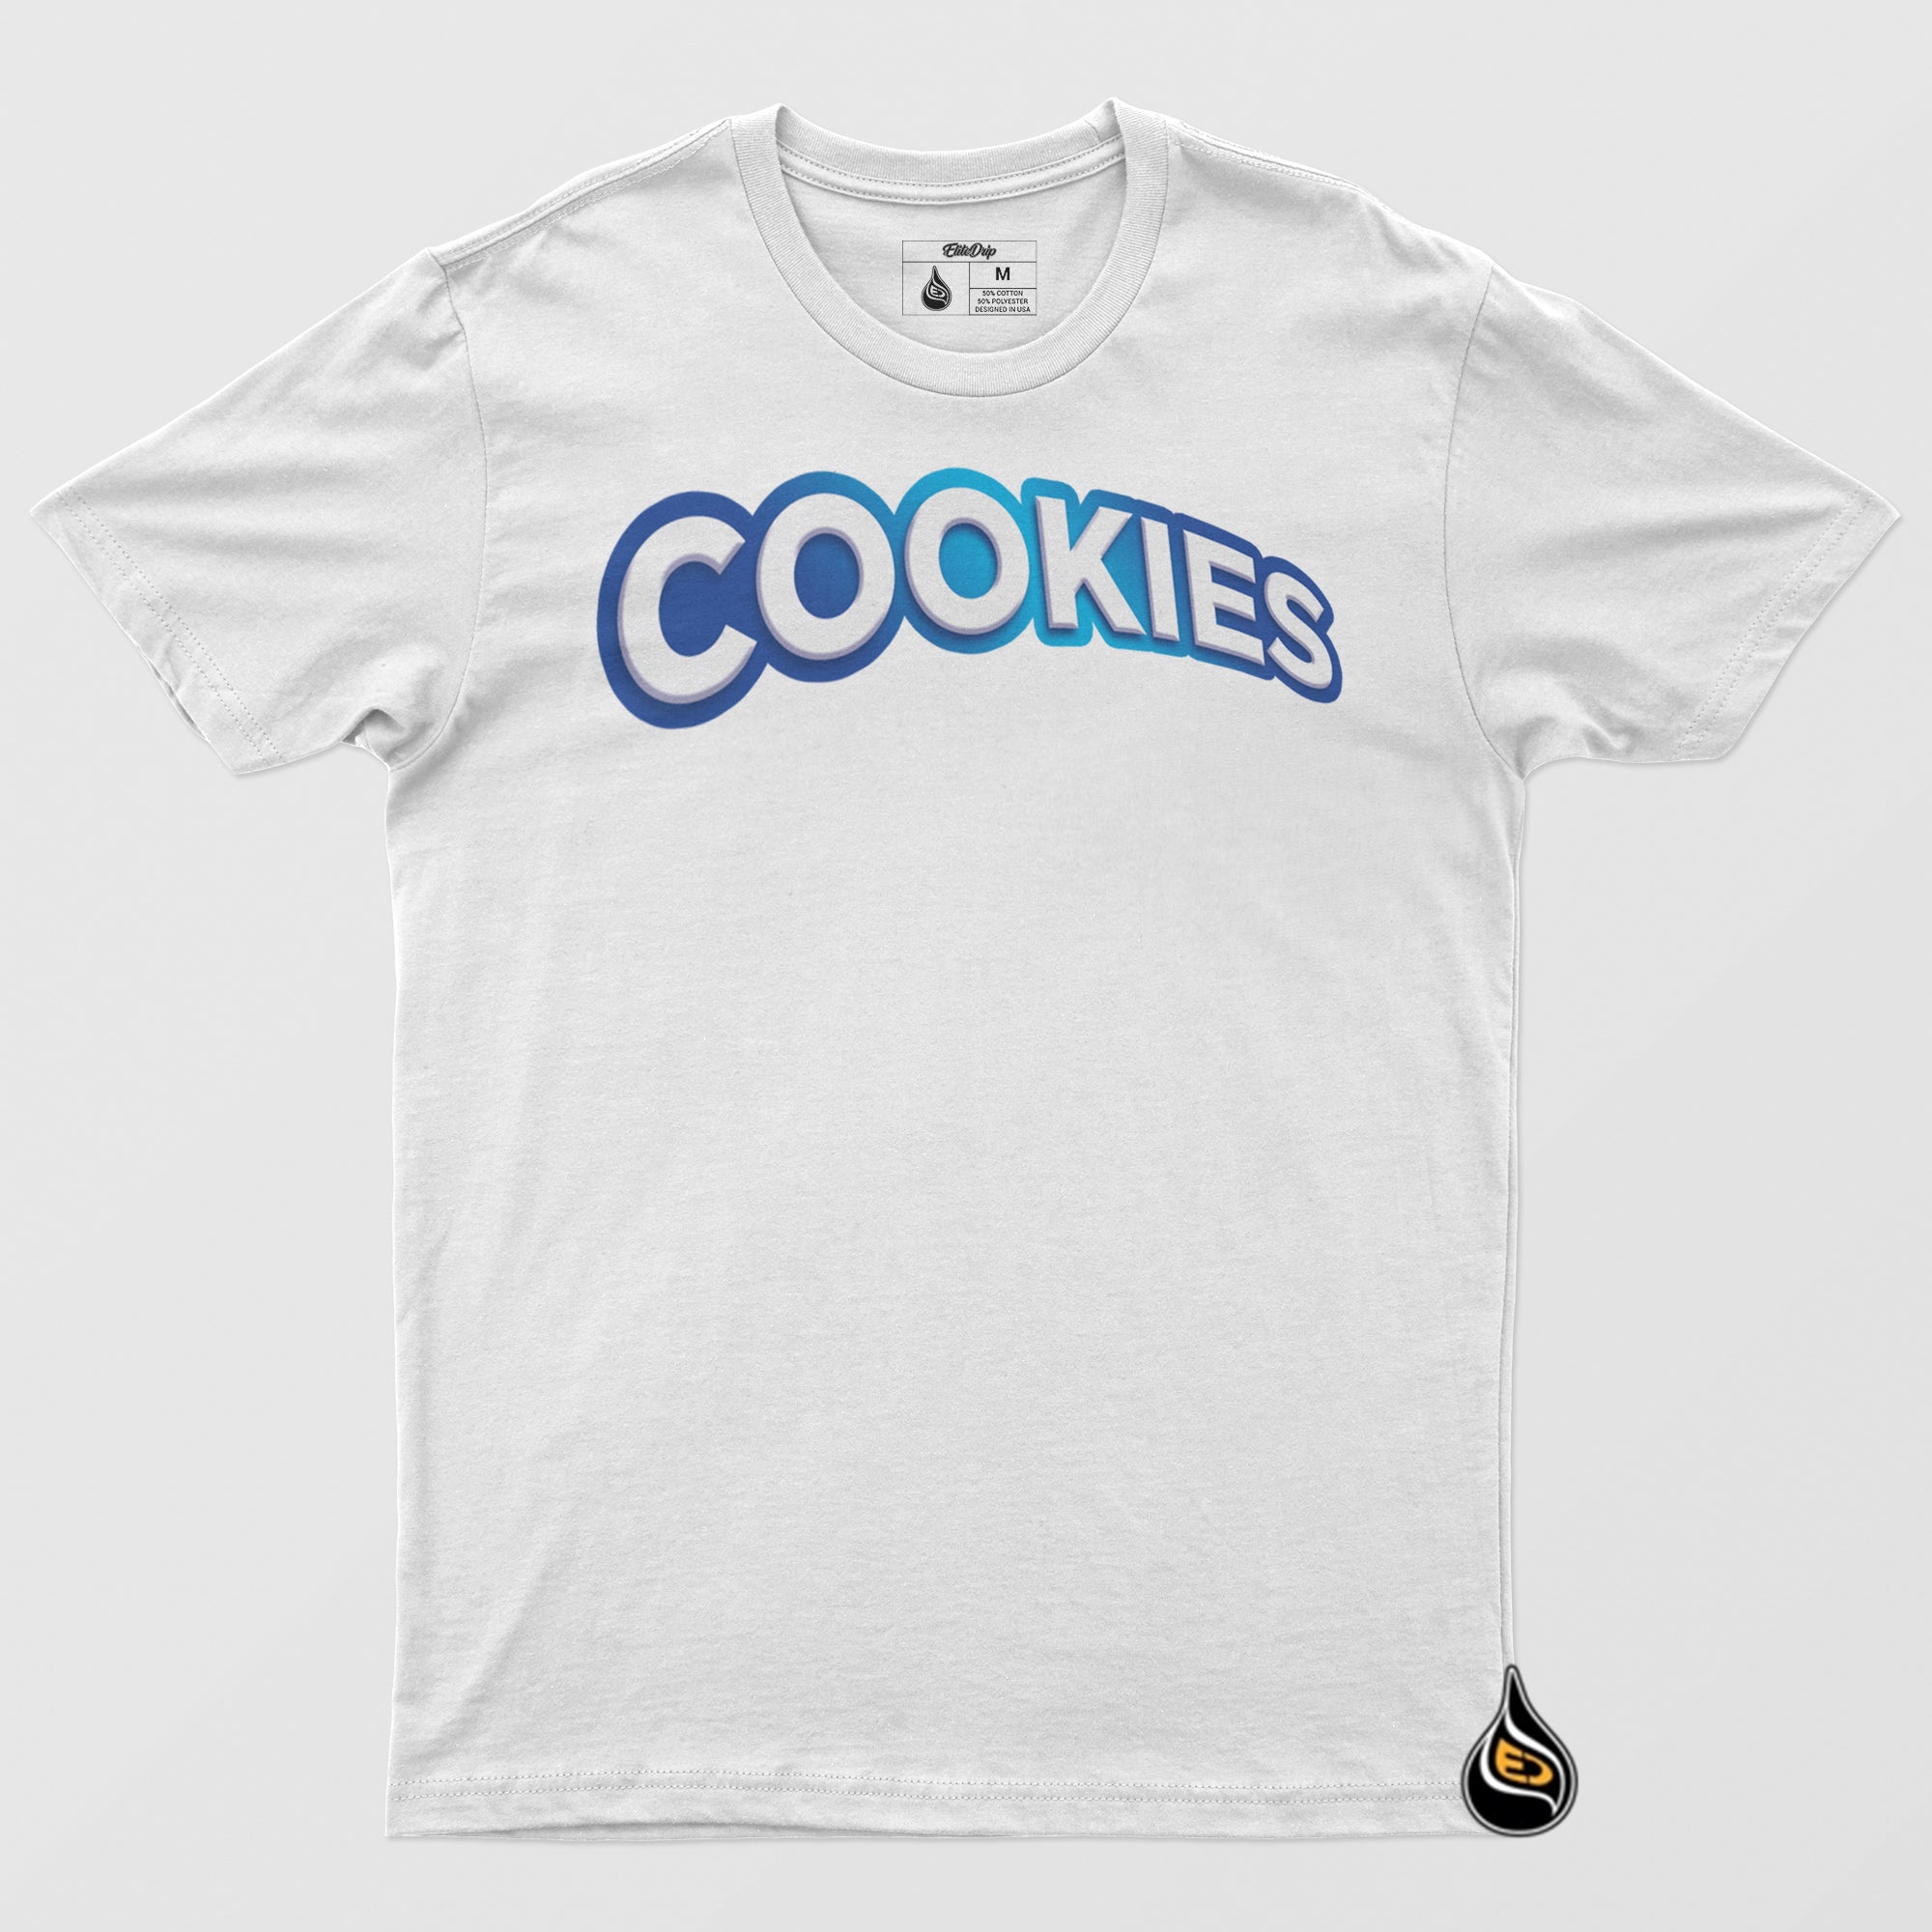 Cookies Tee - EliteDrip